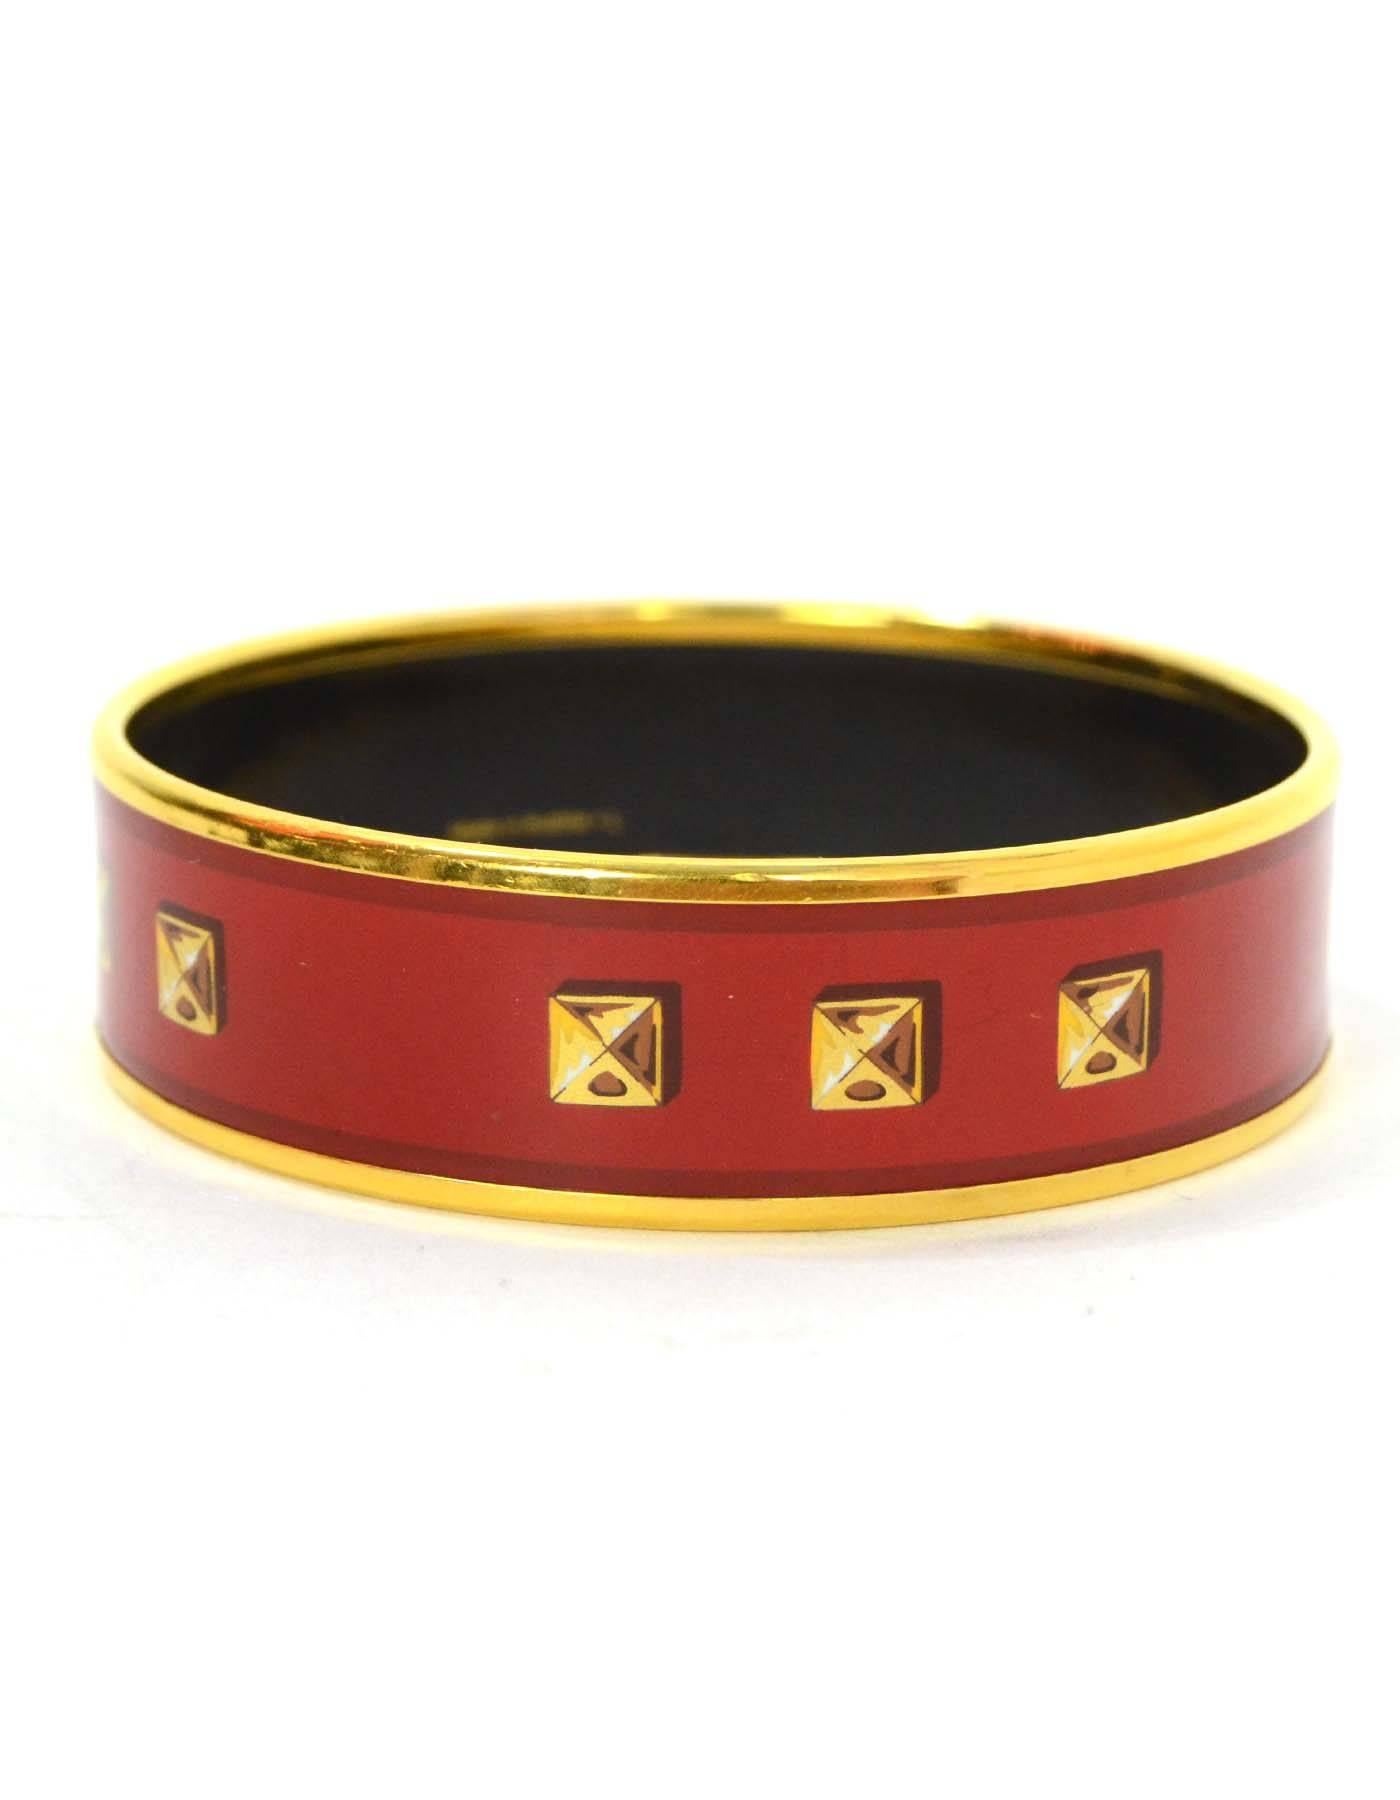 Hermes Red & Gold-Plated Enamel Bangle w/ Stud Design cz 65  1